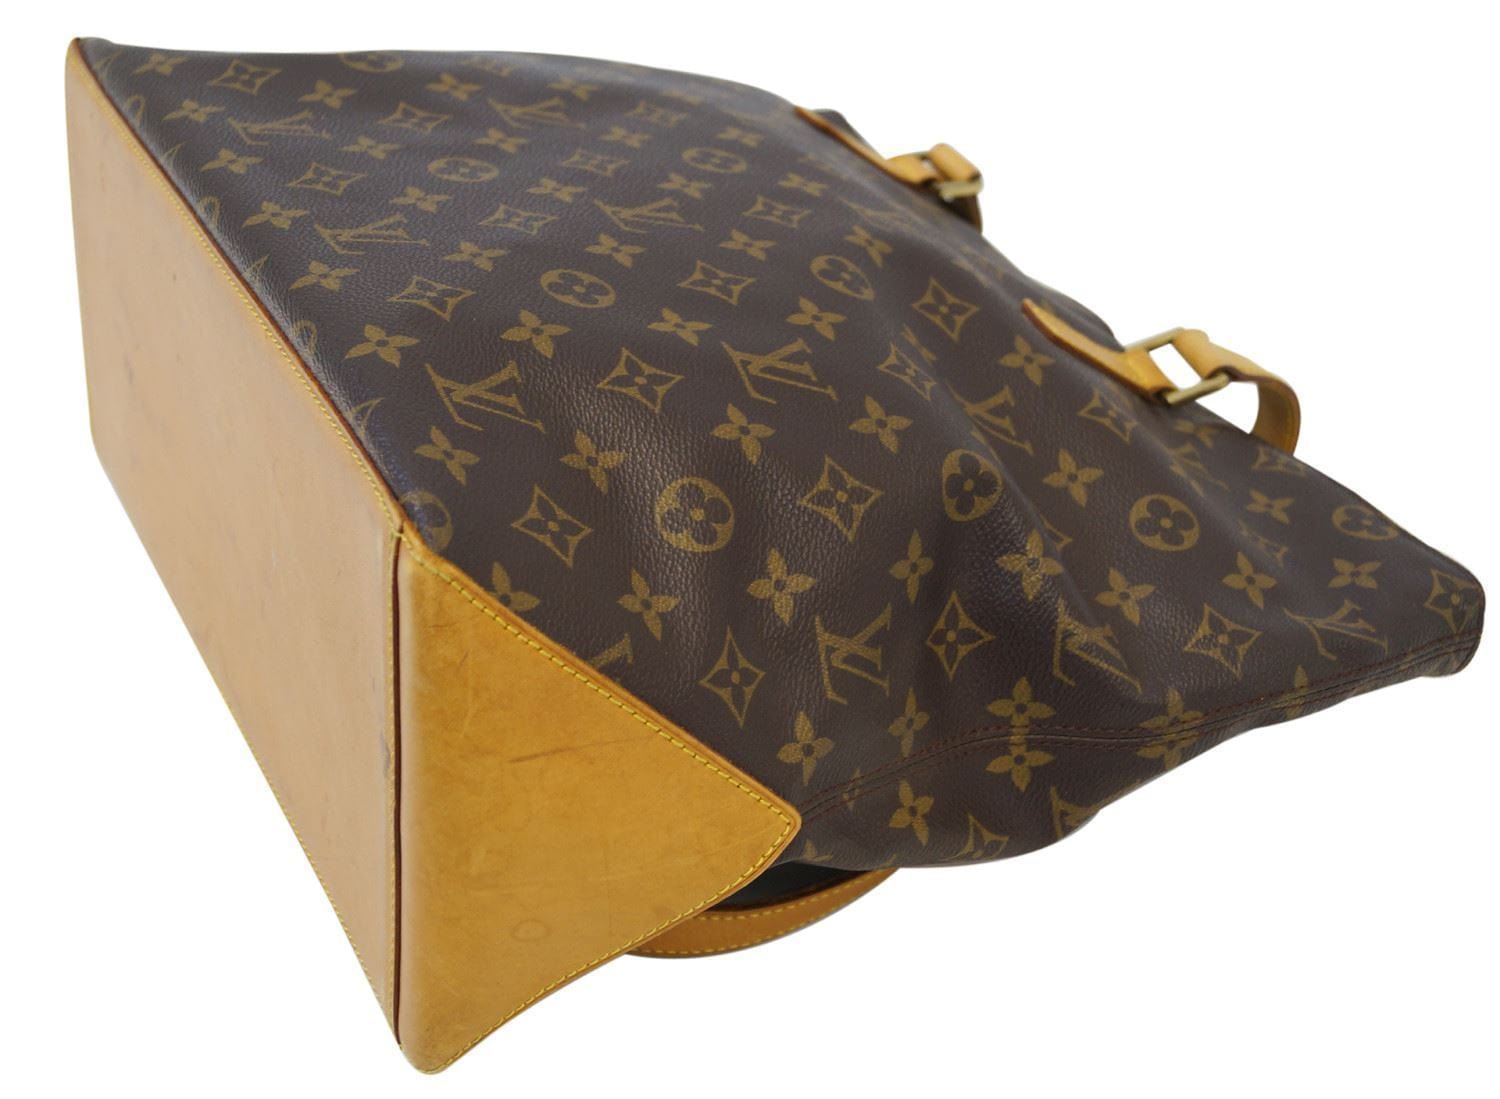 Angelina Jolie's Bag Louis Vuitton Cabas Mezzo 